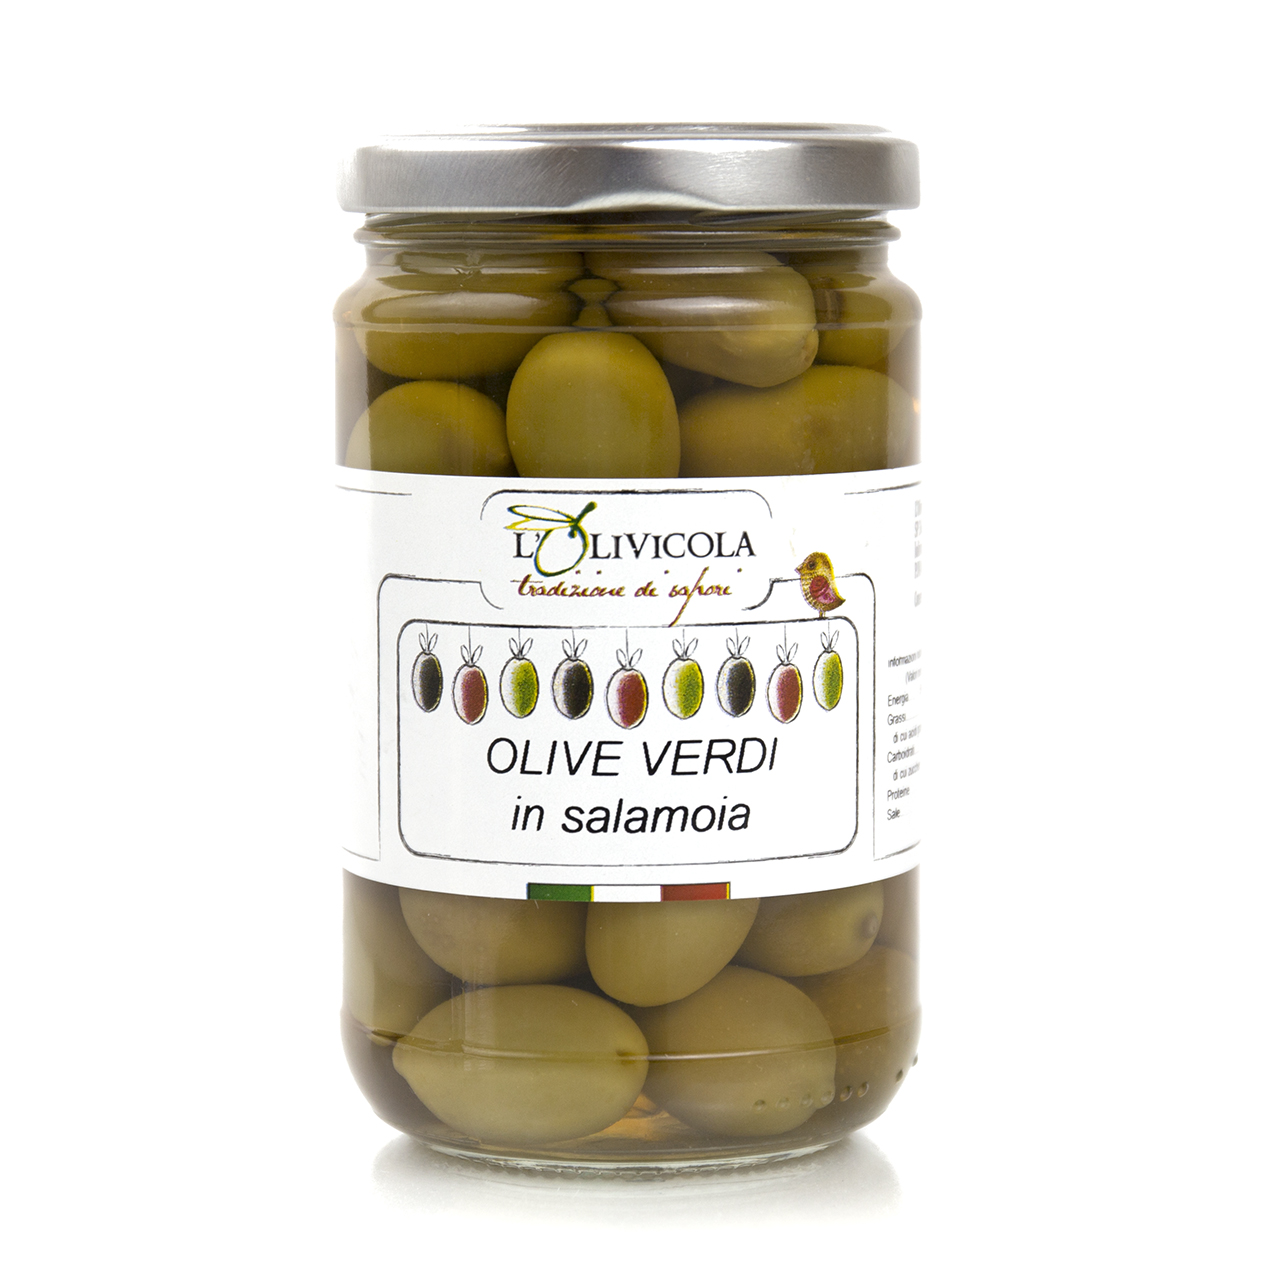 Olive Verdi in salamoia